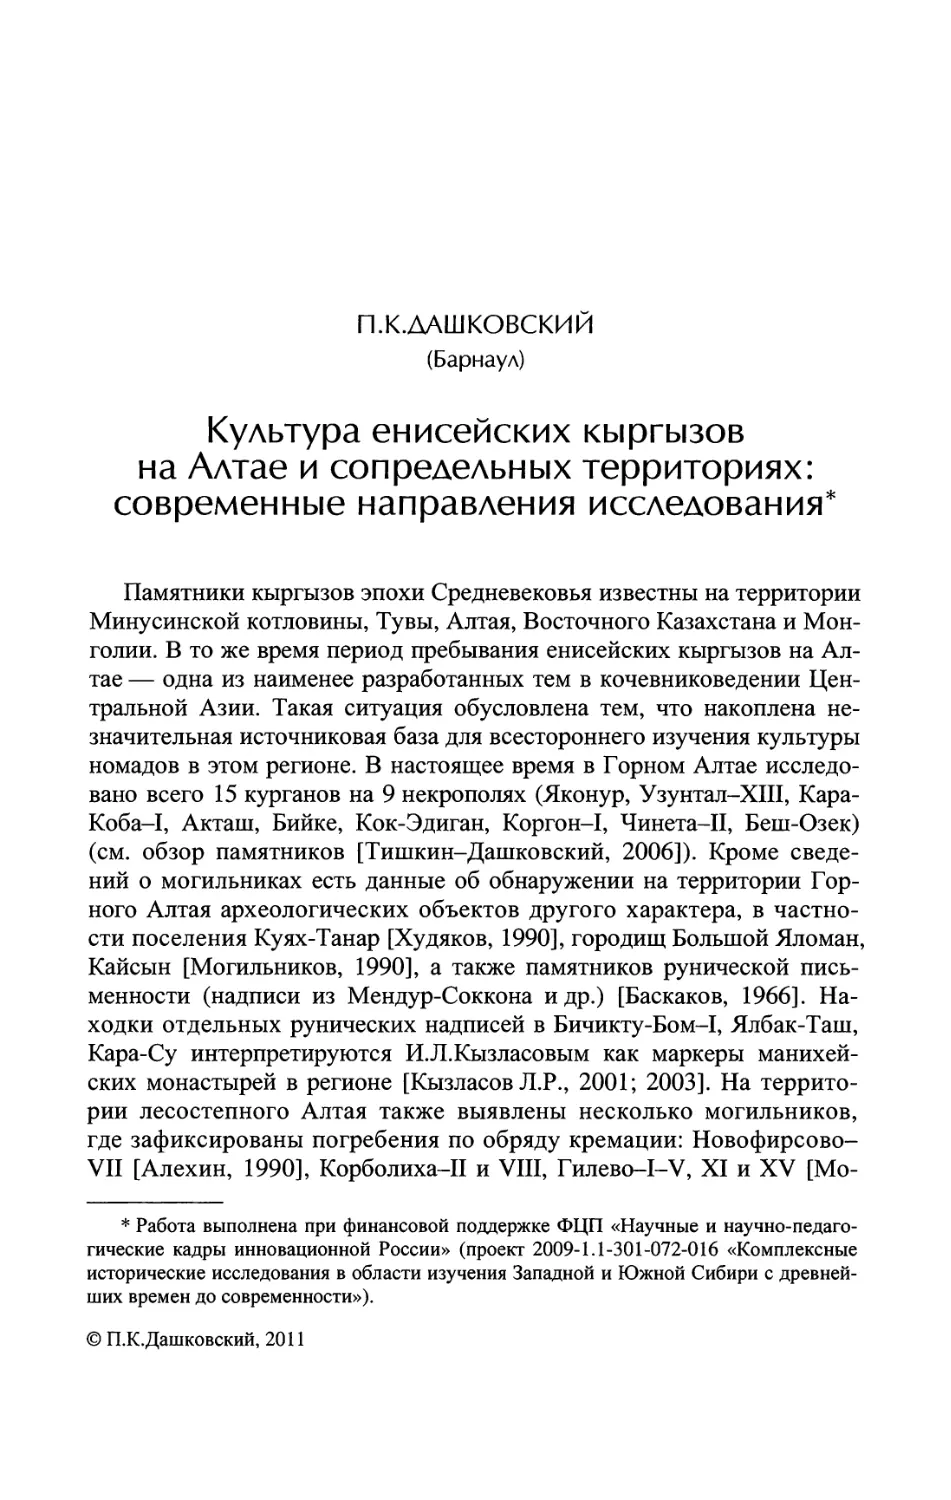 Культура енисейских кыргызов на Алтае и сопредельных территориях: современные направления исследования